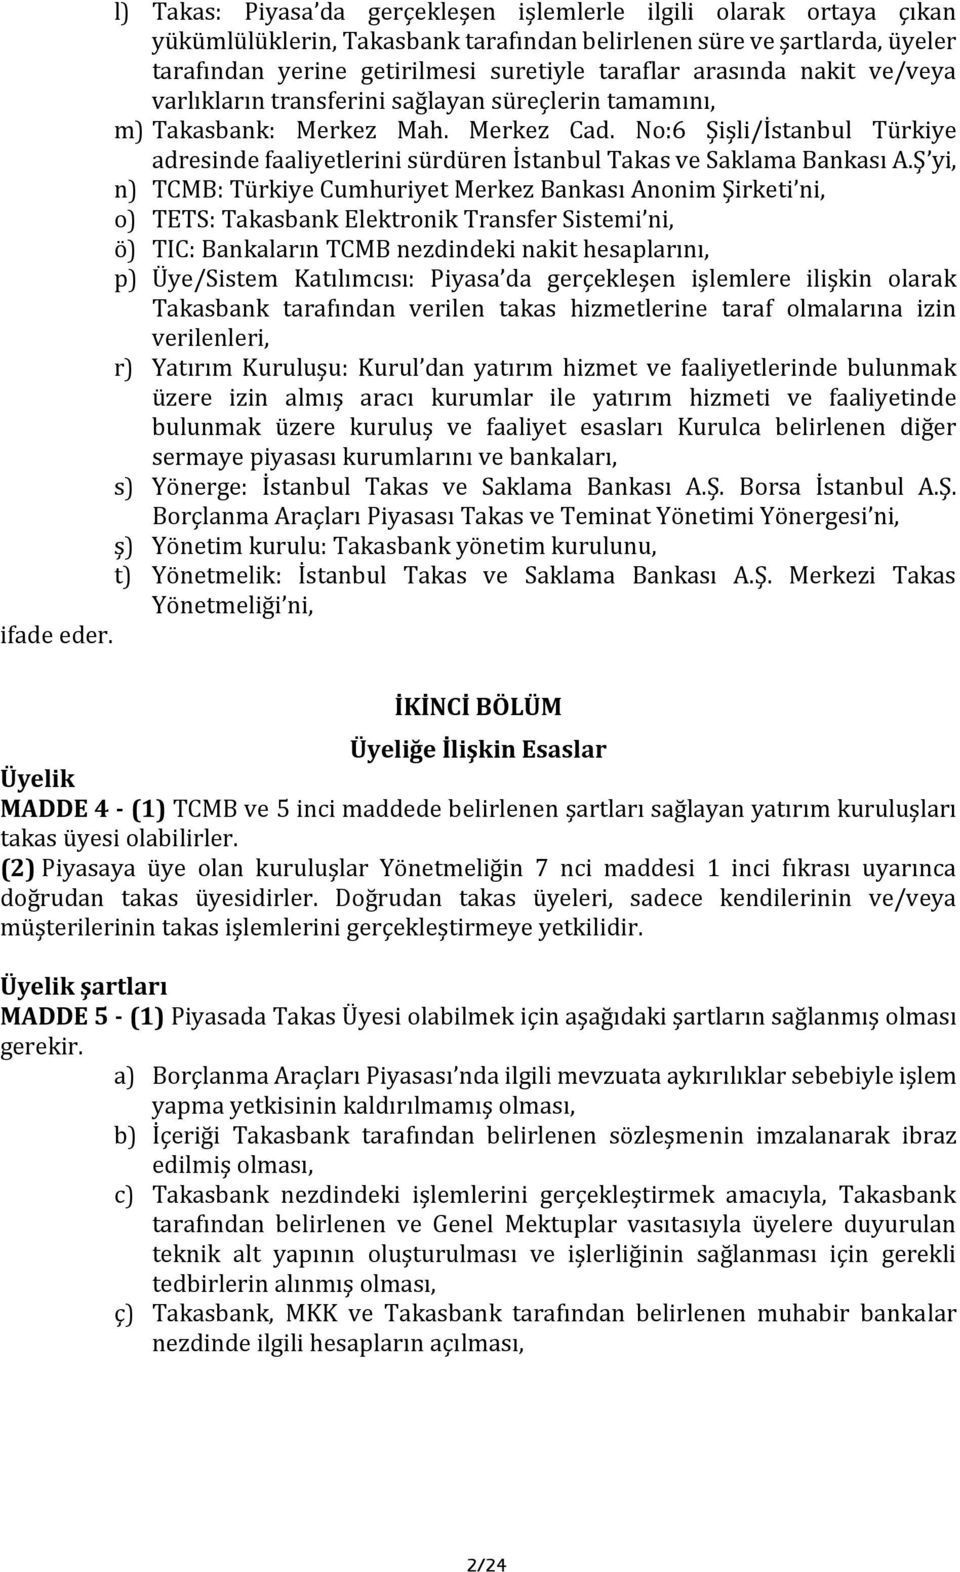 No:6 Şişli/İstanbul Türkiye adresinde faaliyetlerini sürdüren İstanbul Takas ve Saklama Bankası A.